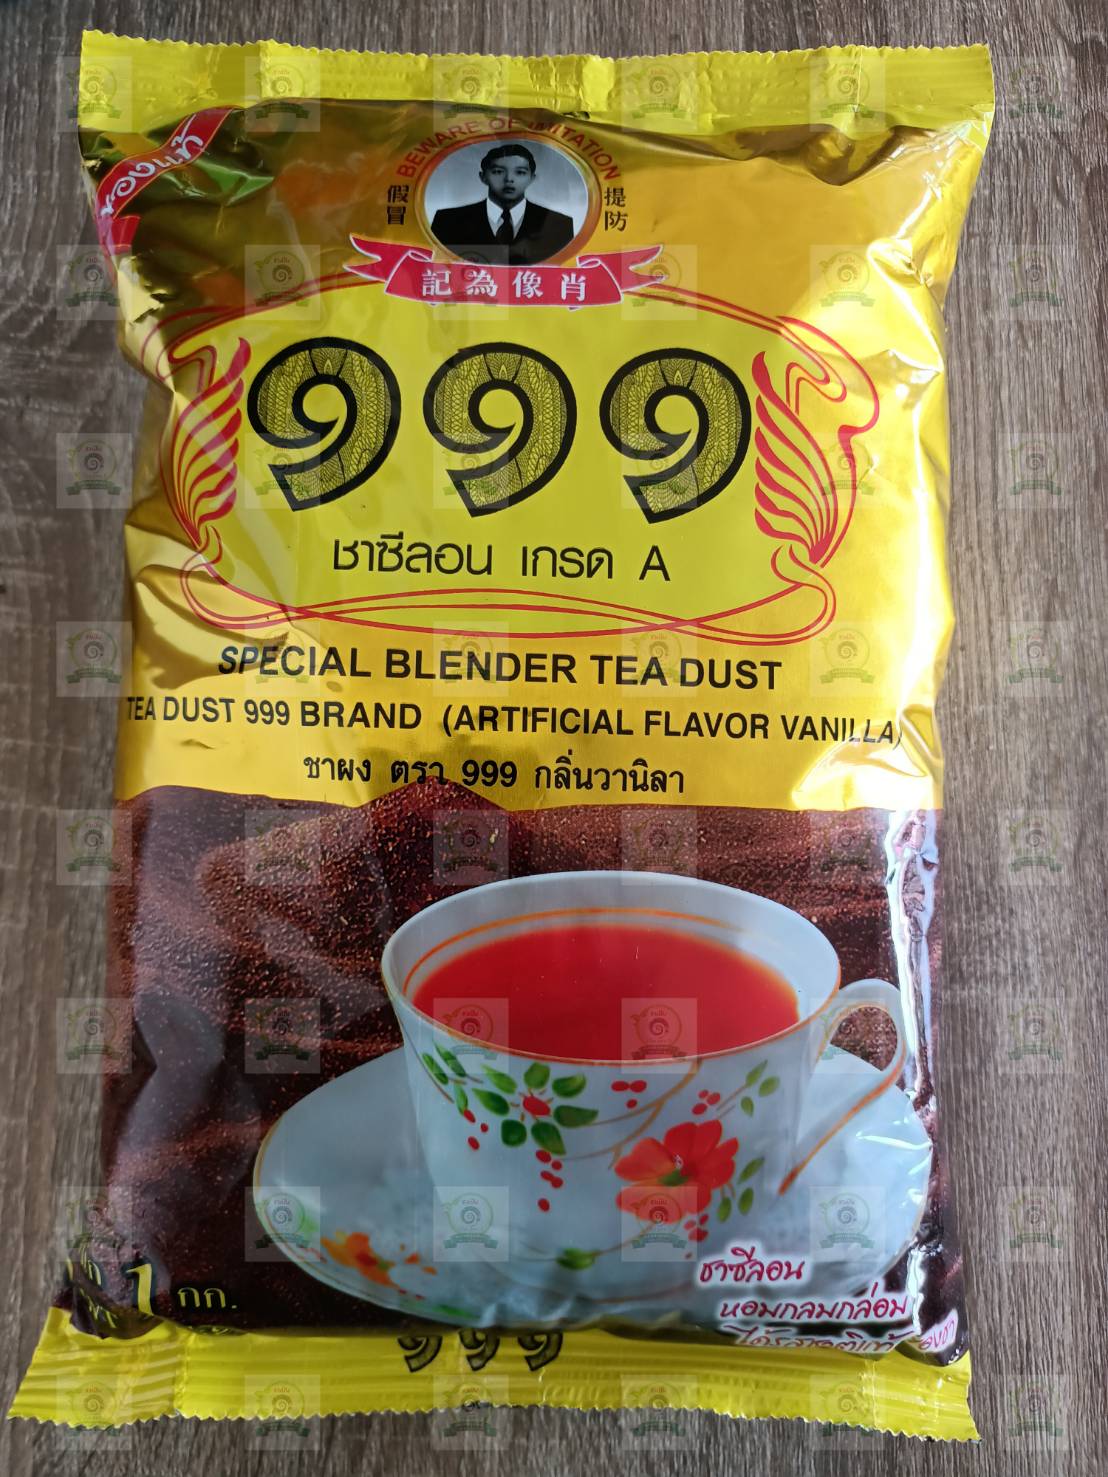 ชา 999 ผงชาตองเก้า ชา ตรา 999 ชาซีลอน เกรด A Tea Dust 999 ของแท้ ขนาด 1 กิโลกรัม